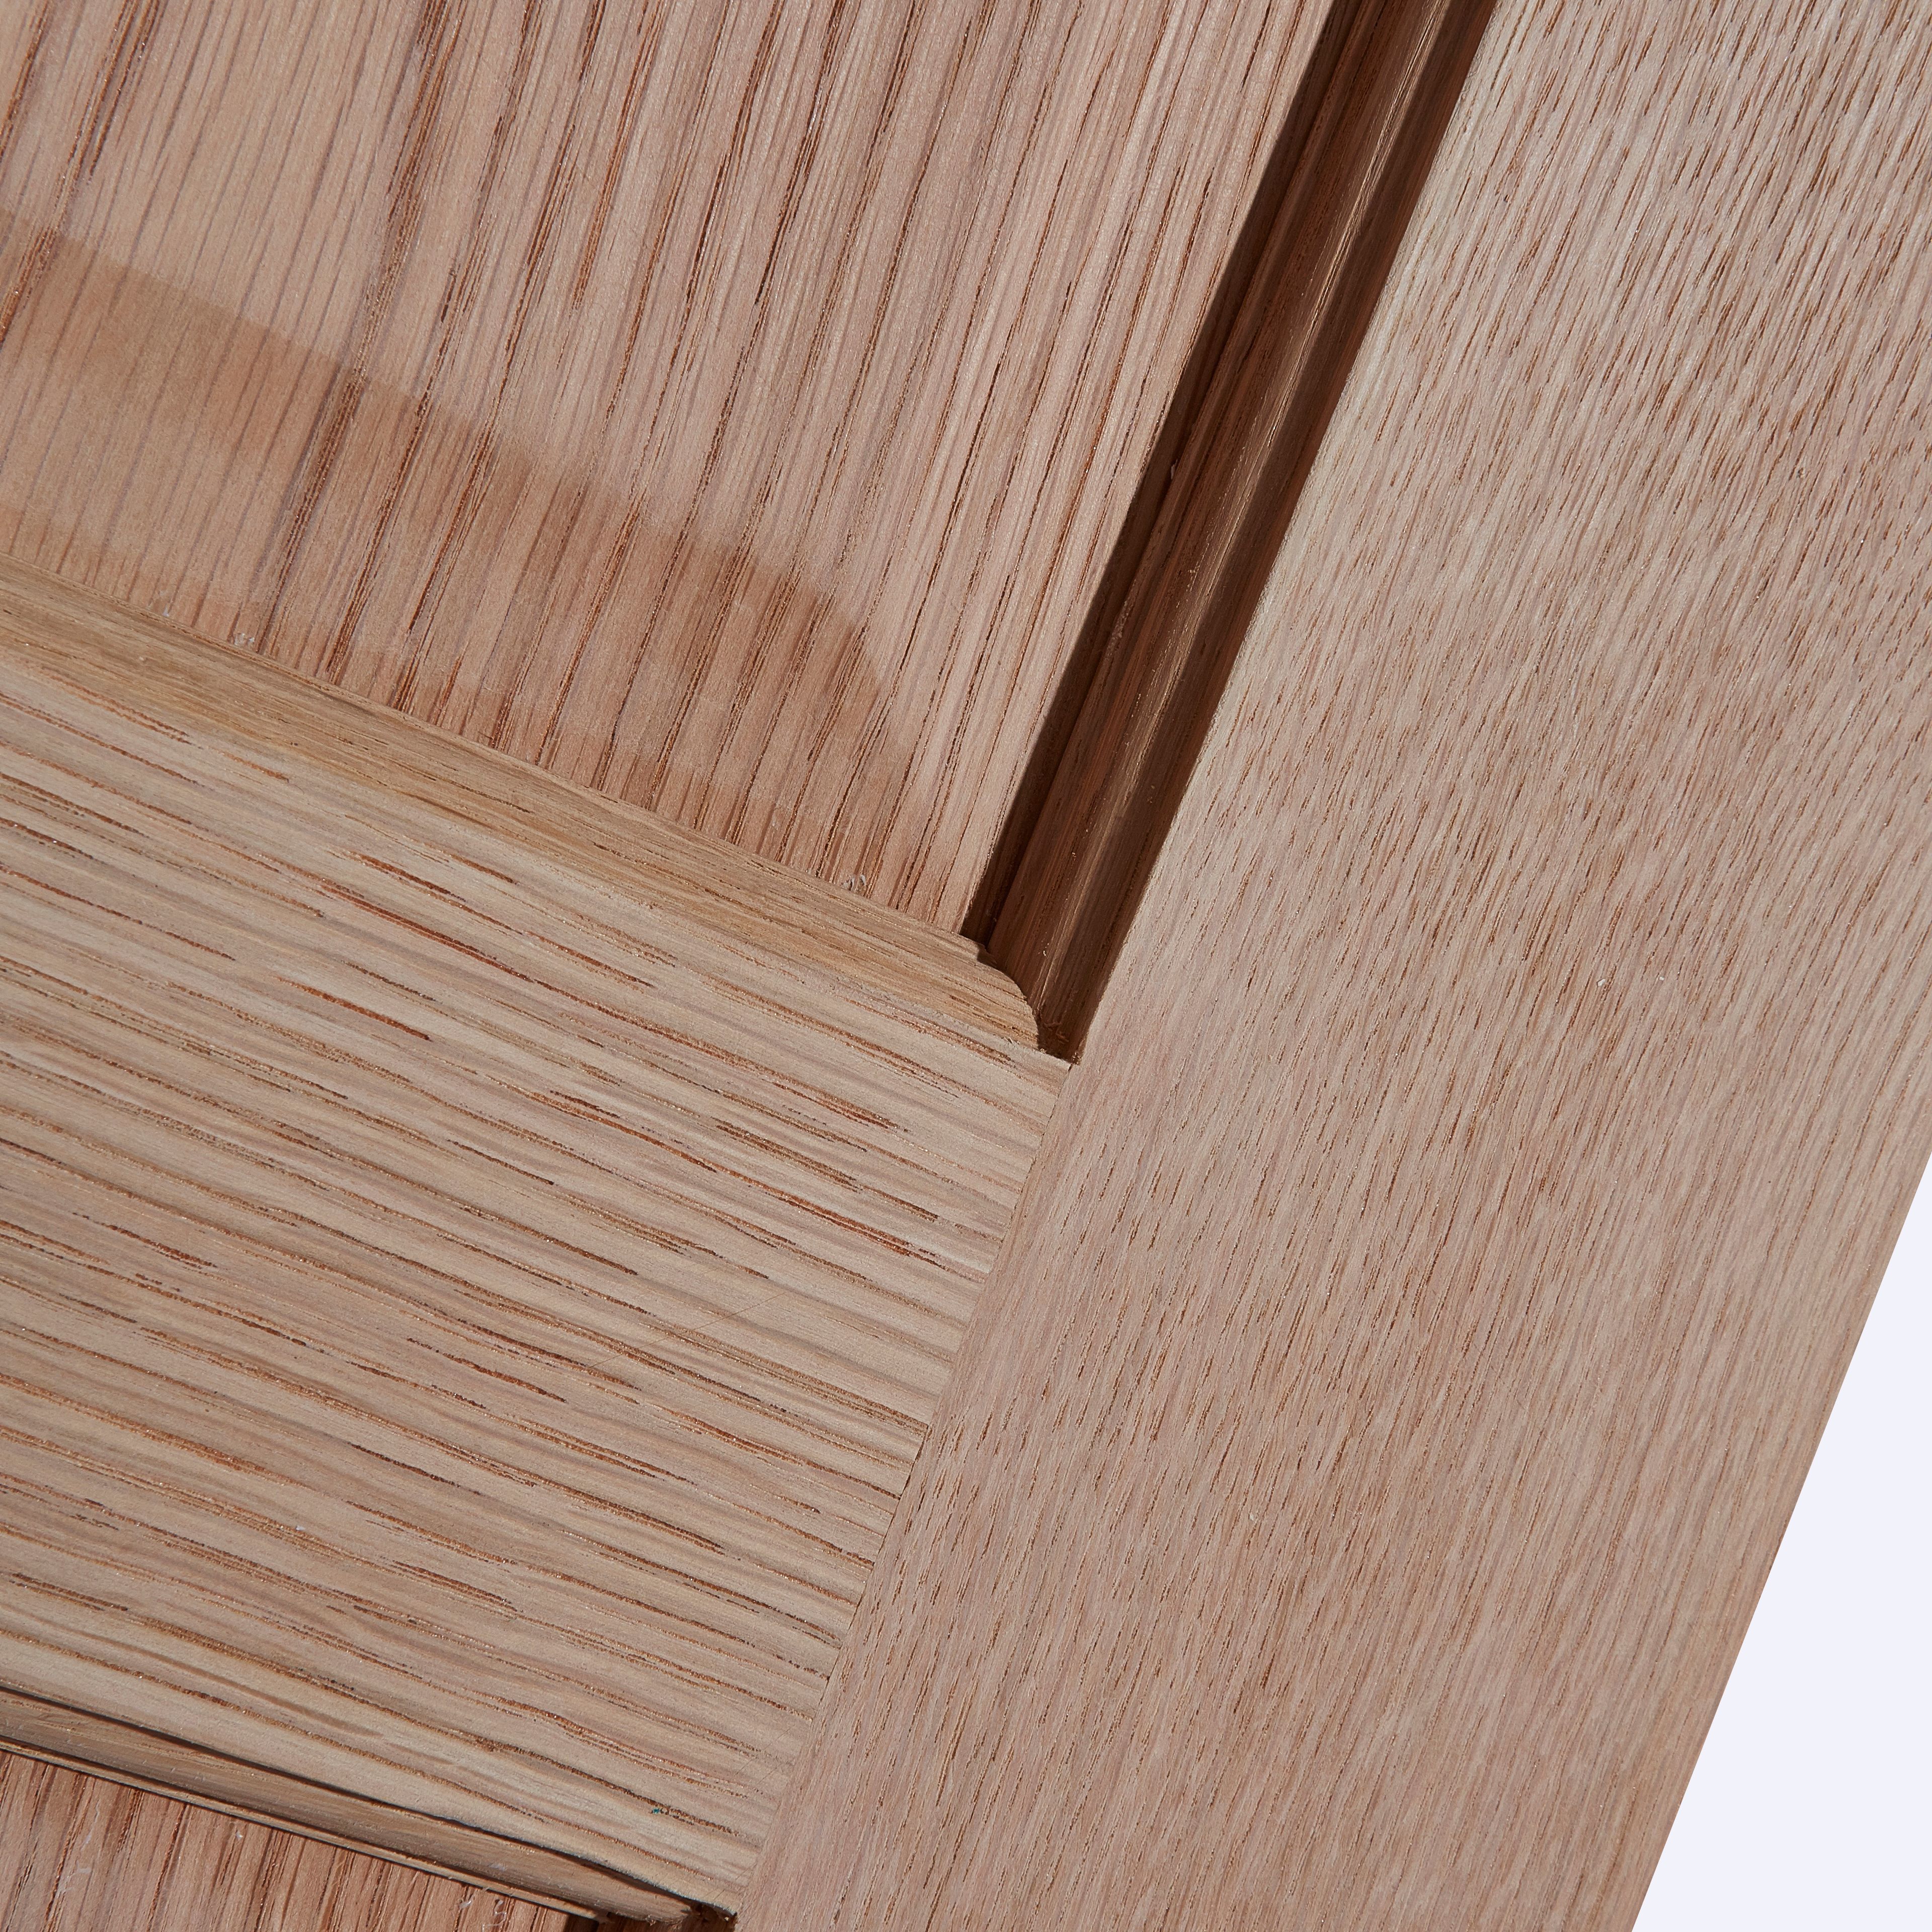 6 panel Unglazed Victorian White oak effect Timber Oak veneer Internal Bi-fold Door set, (H)1950mm (W)750mm